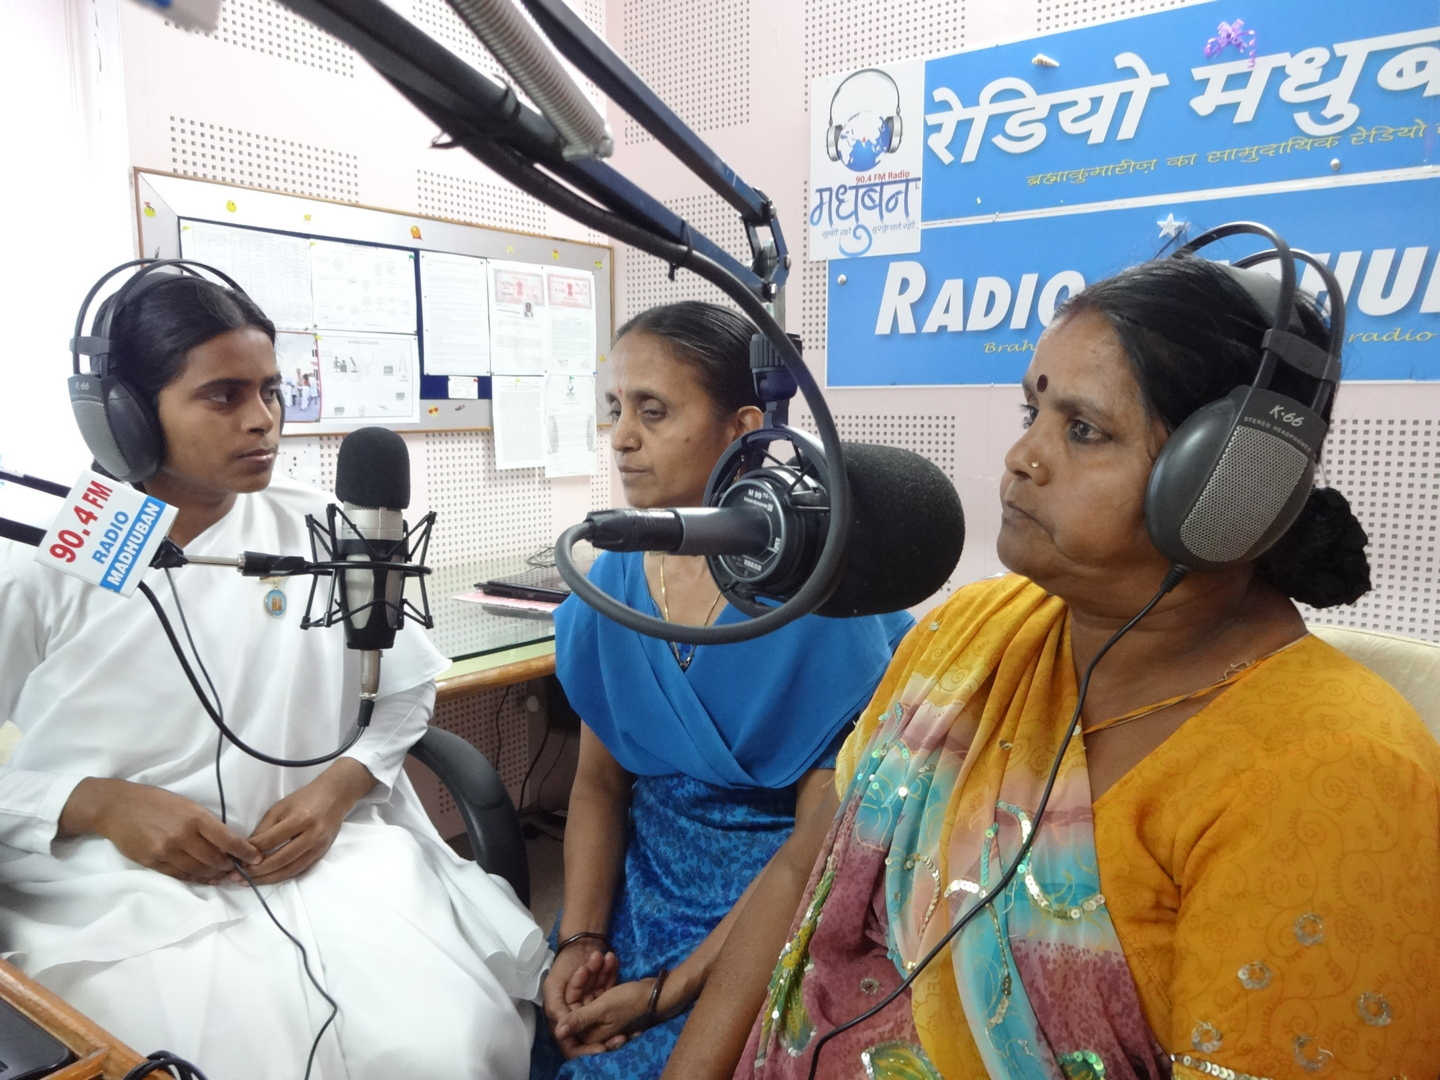 Madhuban radio team - 30